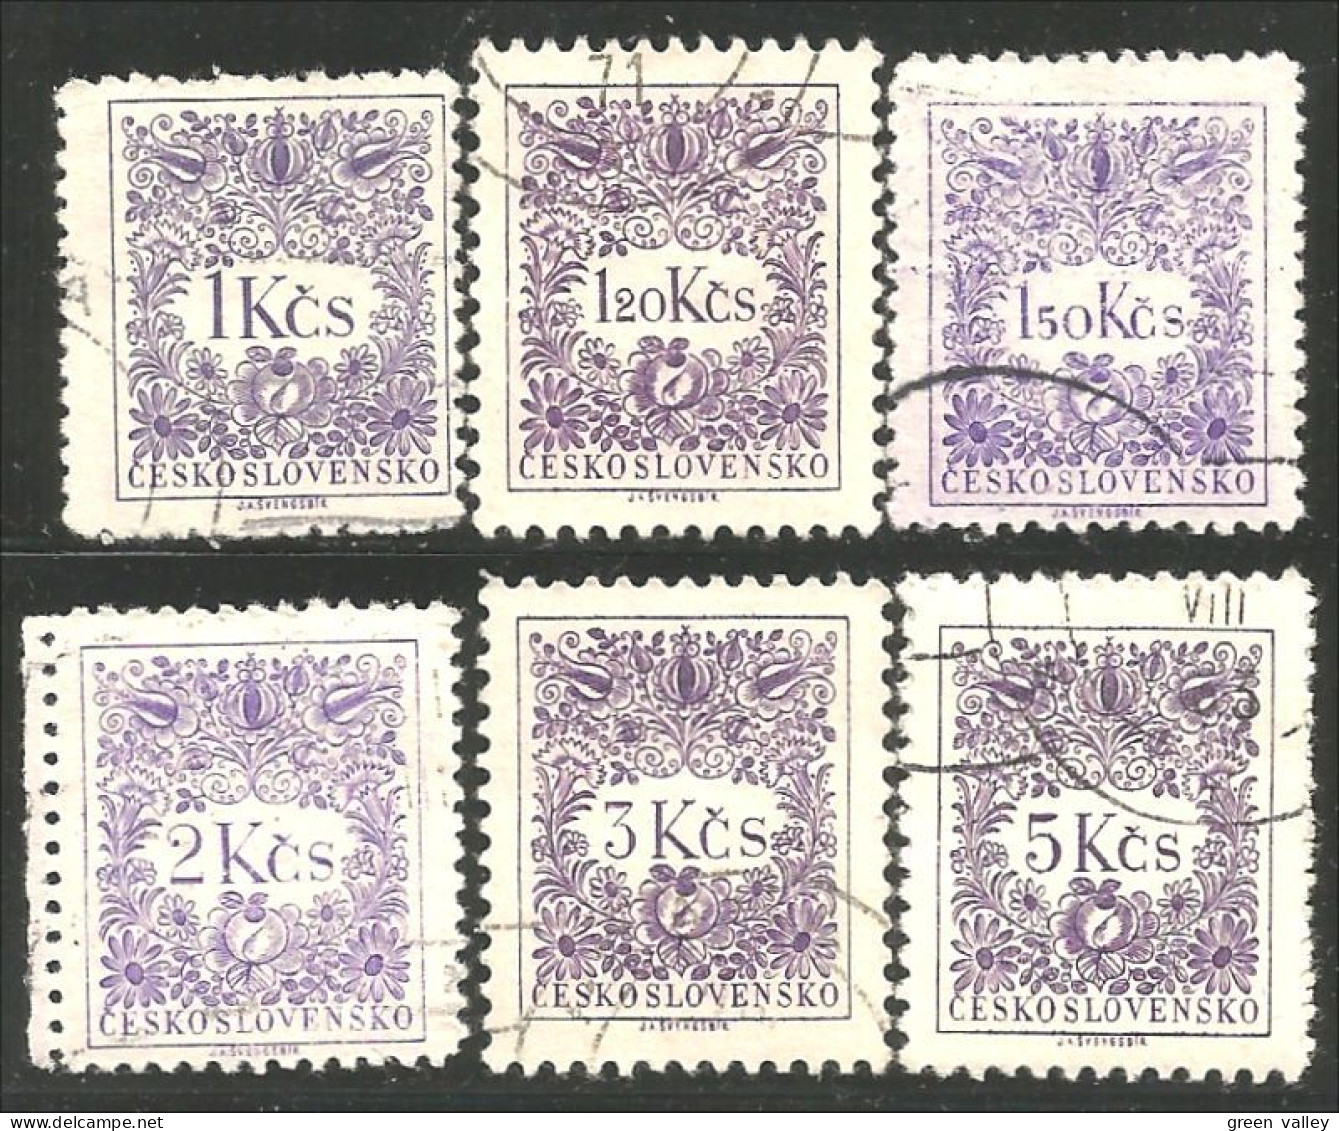 290 Czechoslovakia 1954 Tax Violet Stamps (CZE-243b) - Postage Due